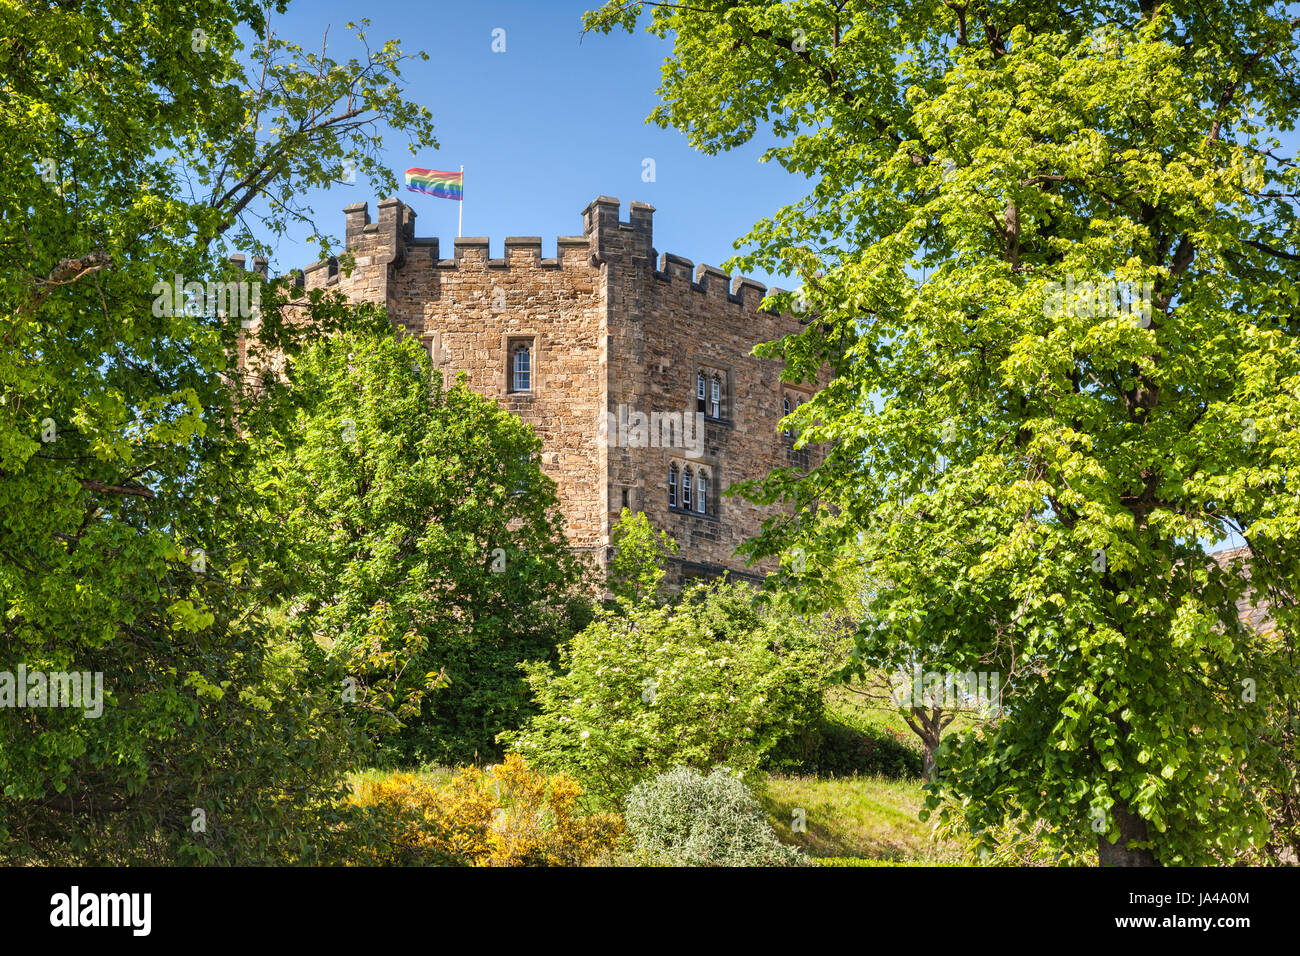 Le vieux donjon du château de Durham, qui fait maintenant partie de l'Université de Durham, entouré d'arbres en pleine page. Banque D'Images